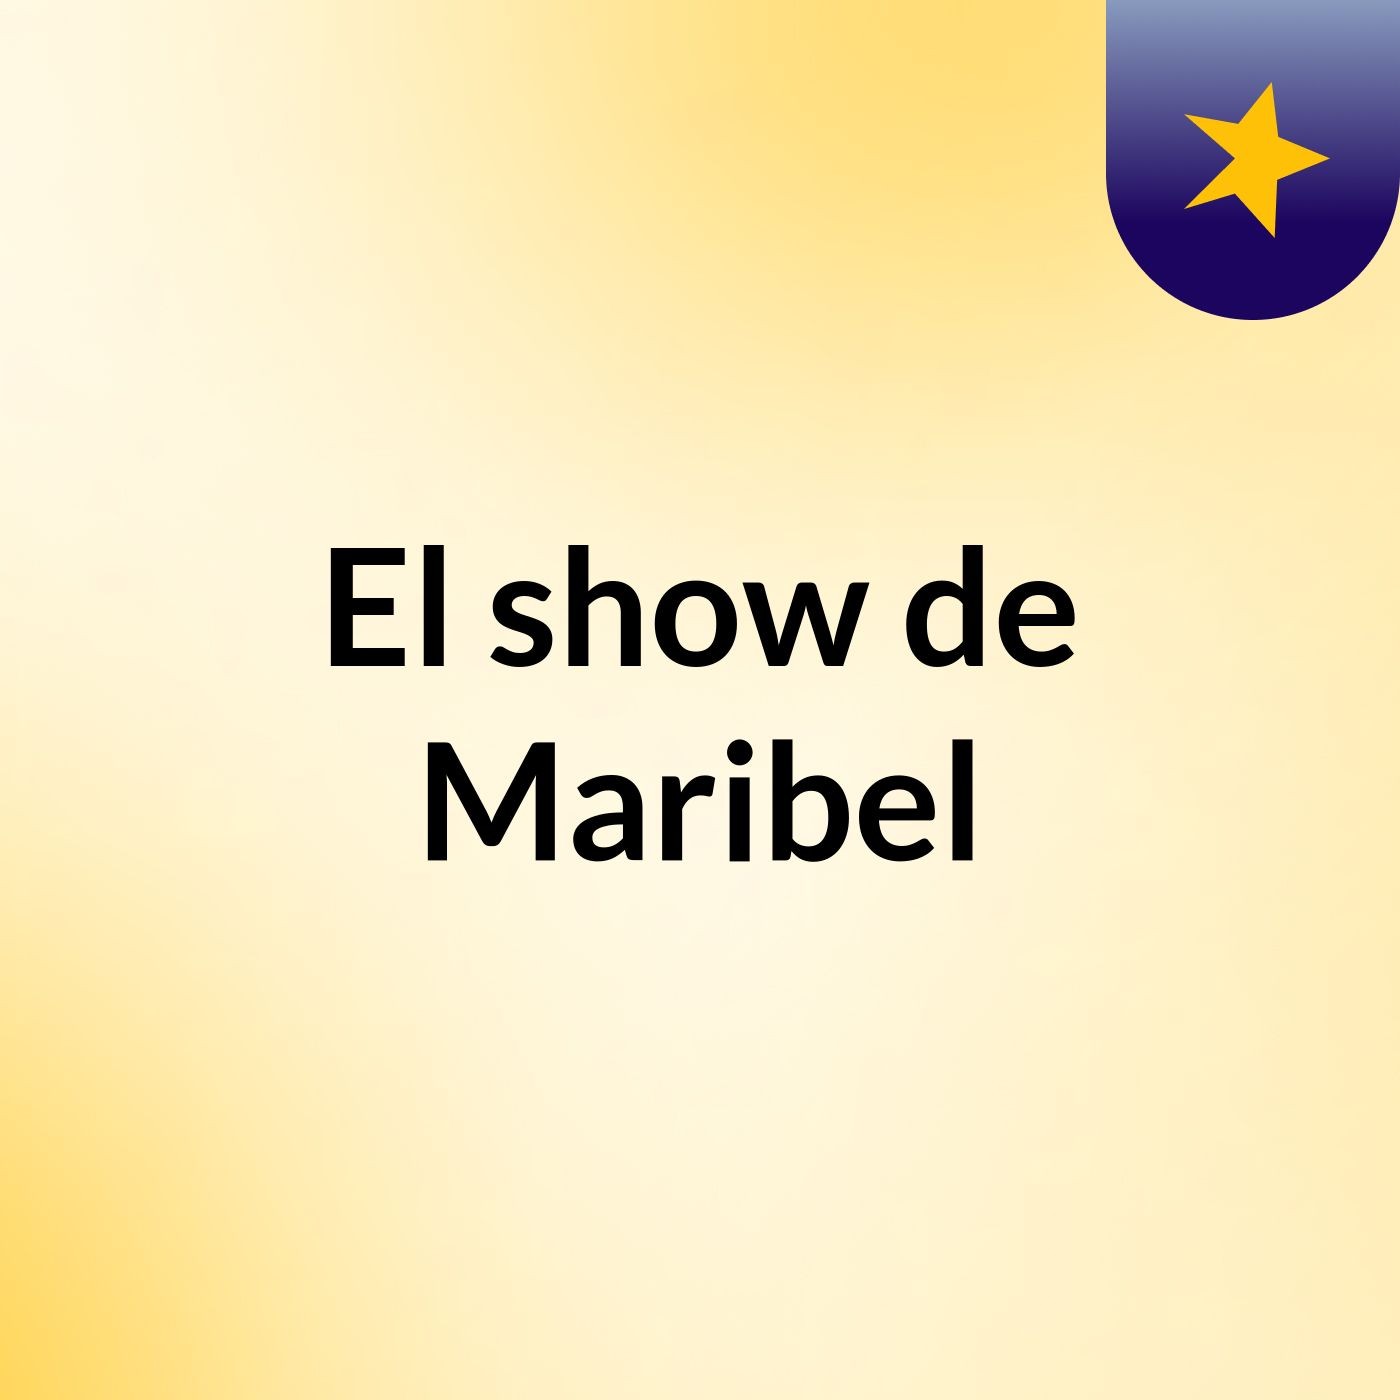 El show de Maribel